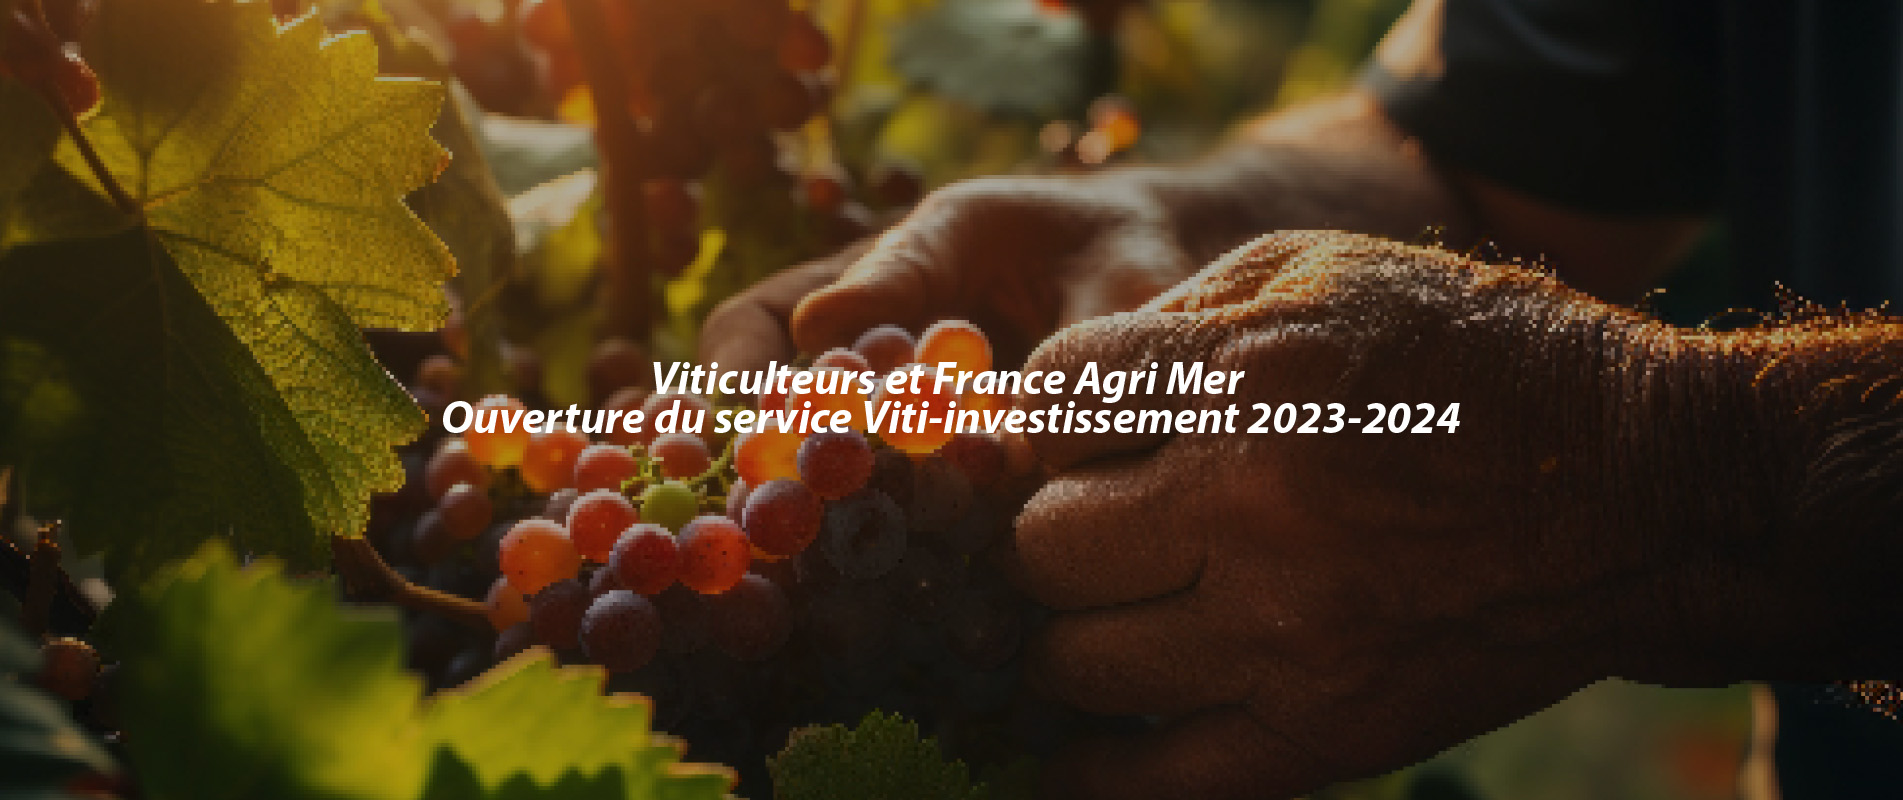 Viticulteurs et France Agri Mer – Ouverture du service Viti-investissement 2023-2024